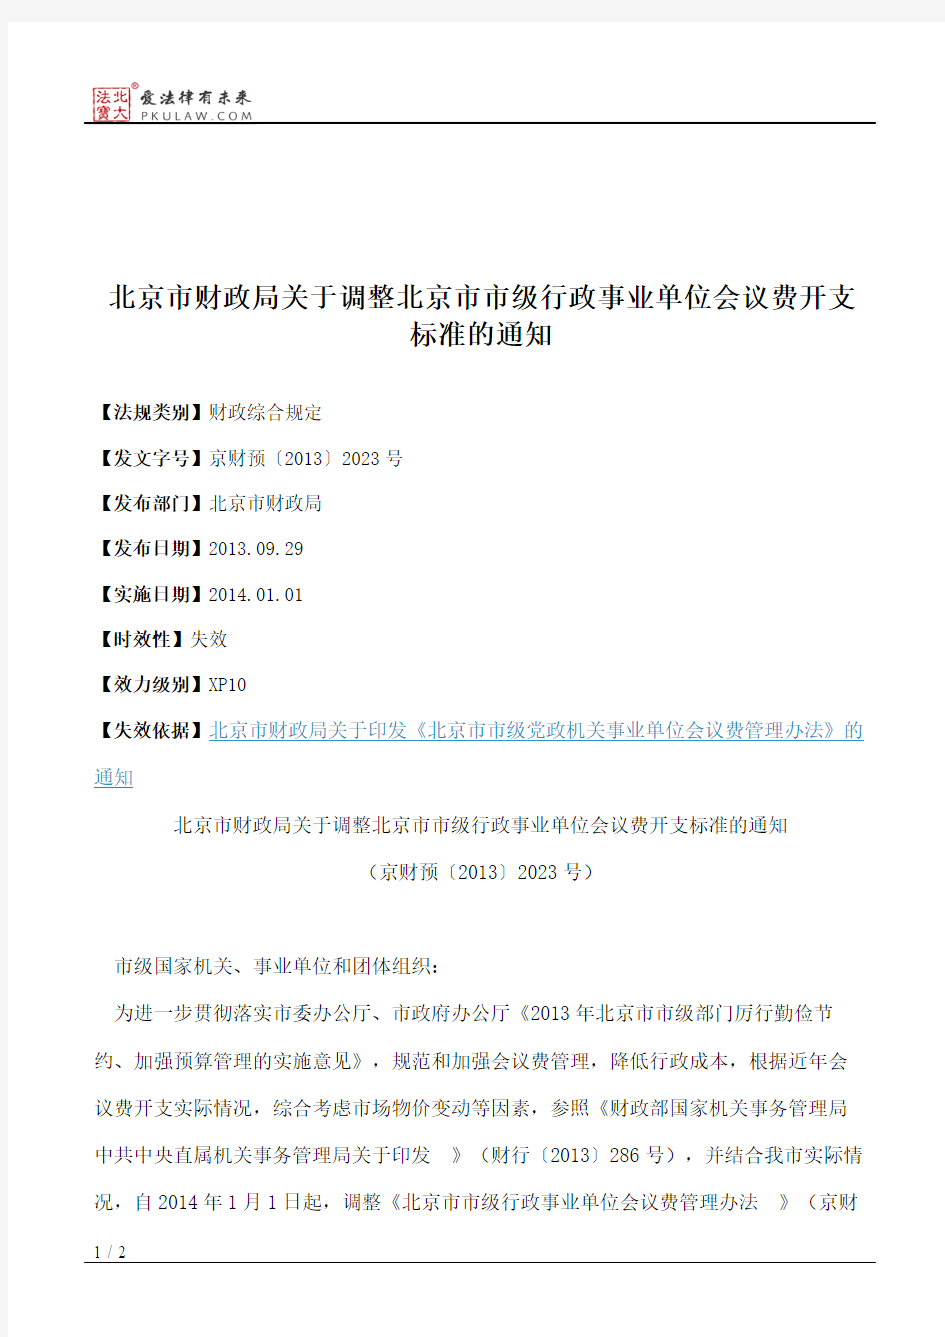 北京市财政局关于调整北京市市级行政事业单位会议费开支标准的通知